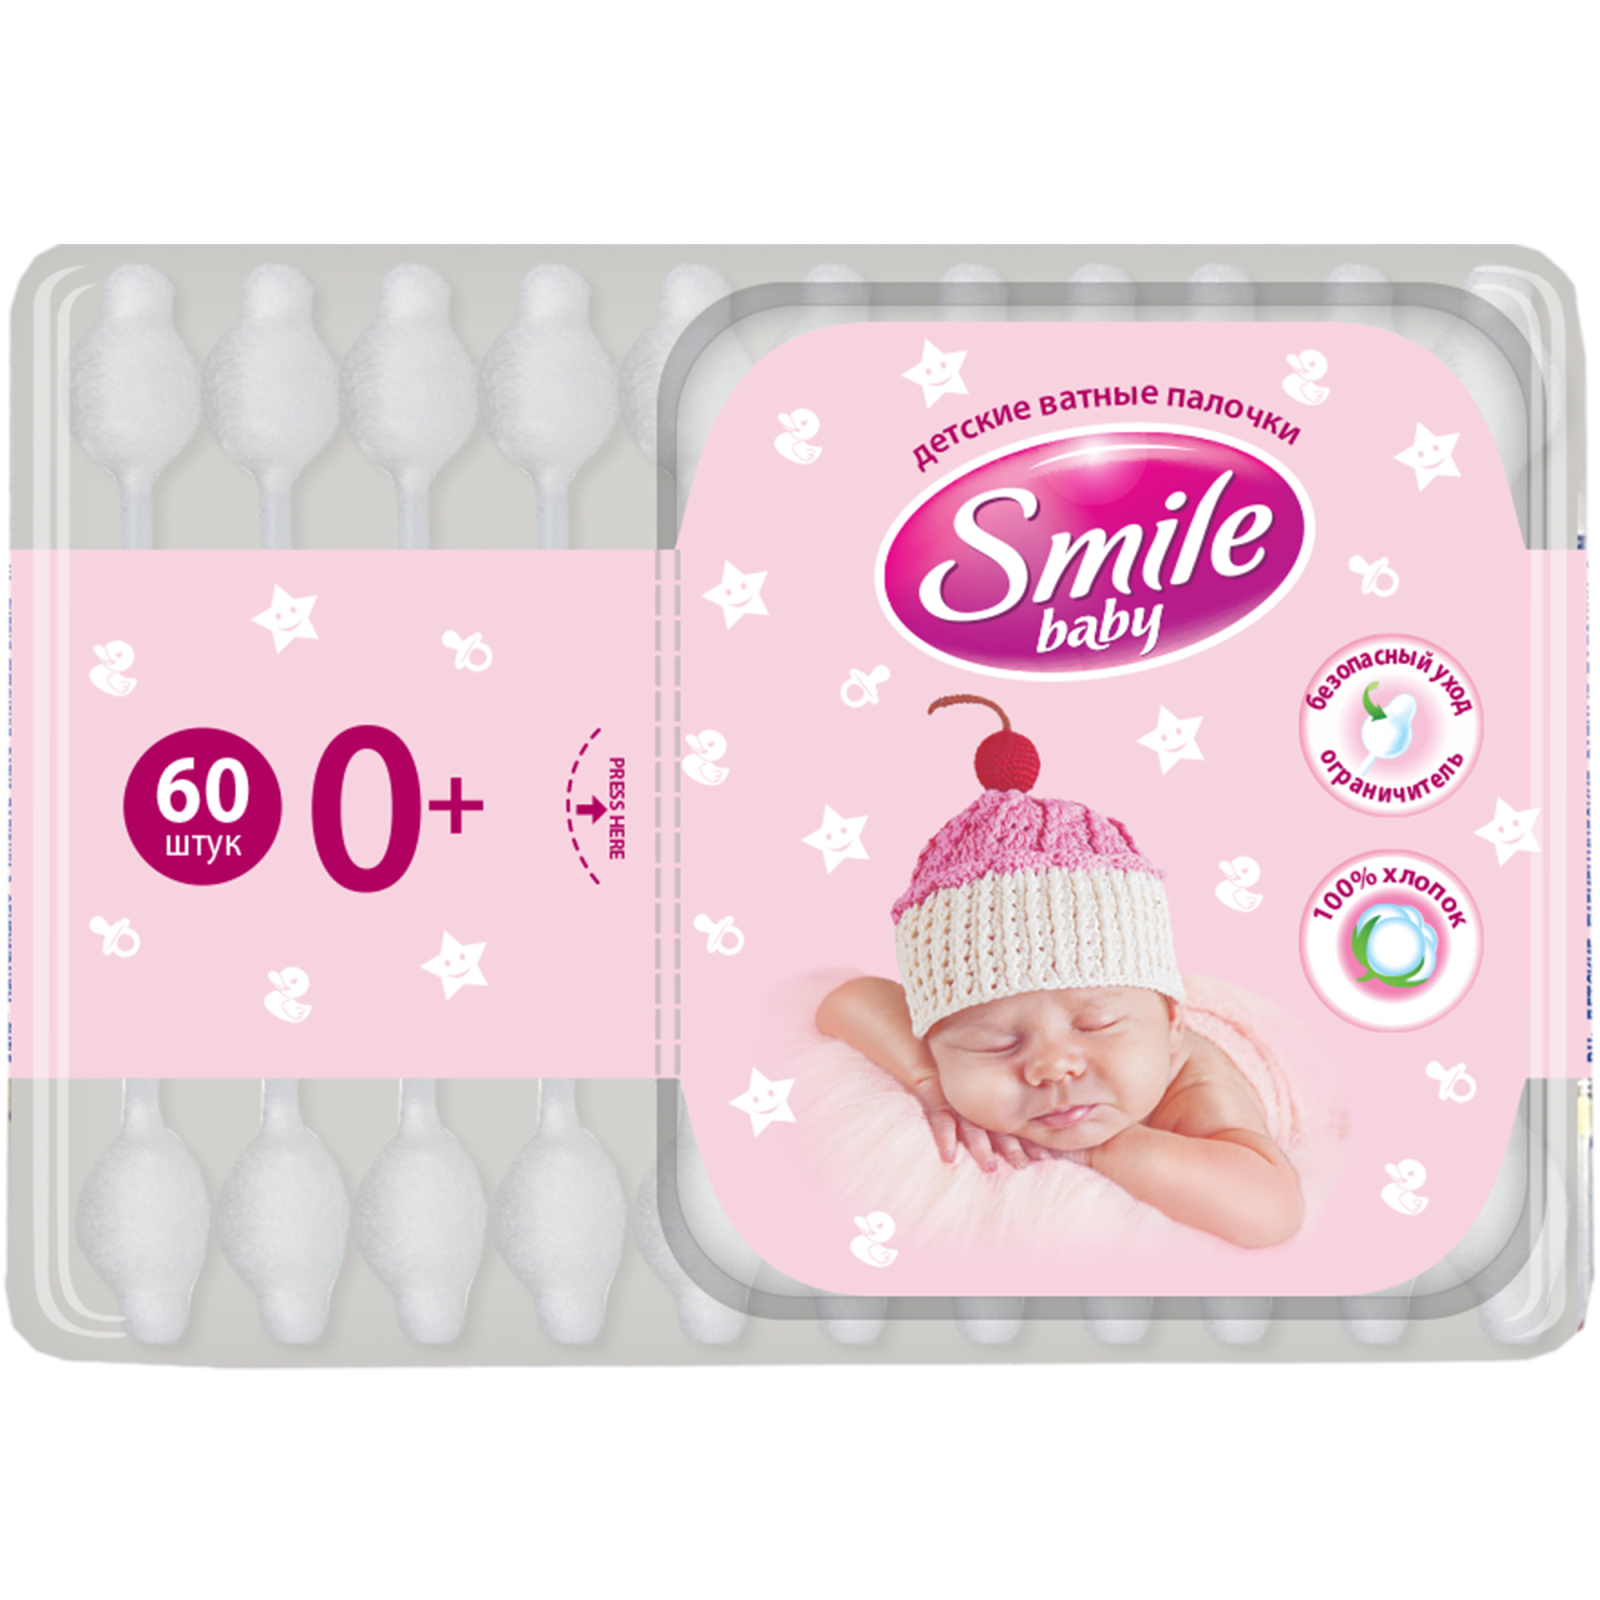 Ватные палочки Smile baby для детей с ограничителем 60 шт (41264100)